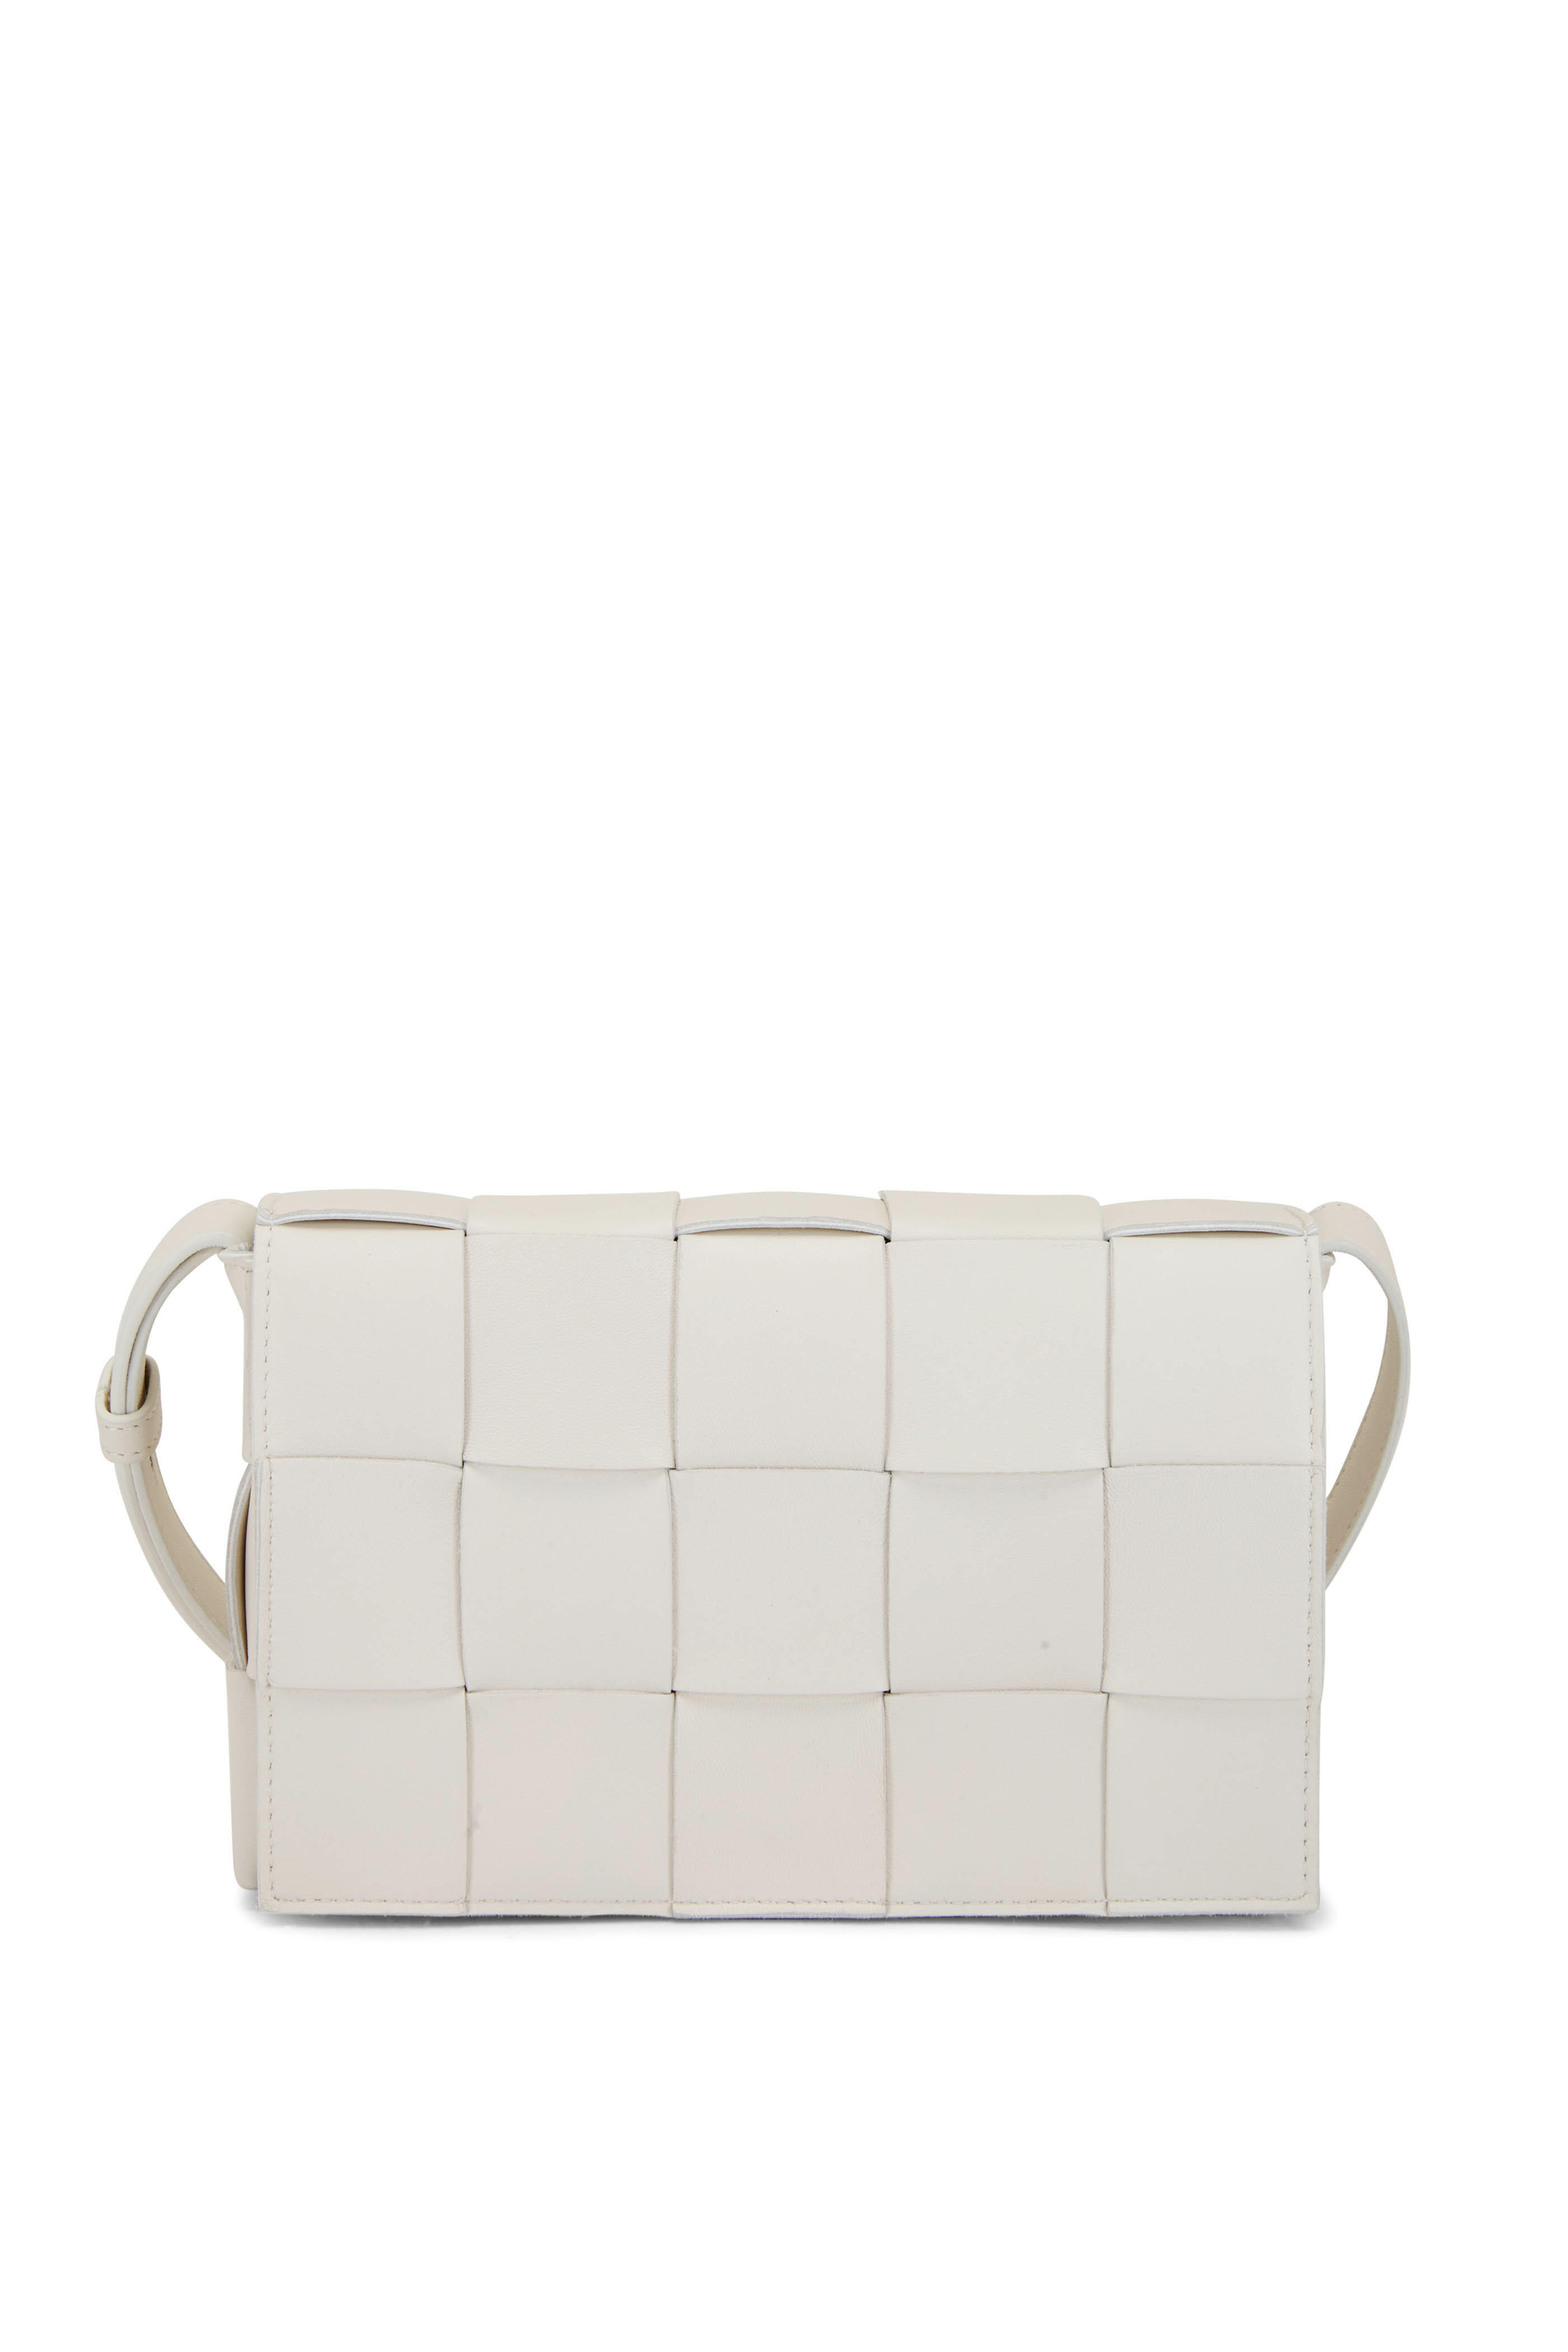 Bottega Veneta - Cassette White Woven Leather Shoulder Bag